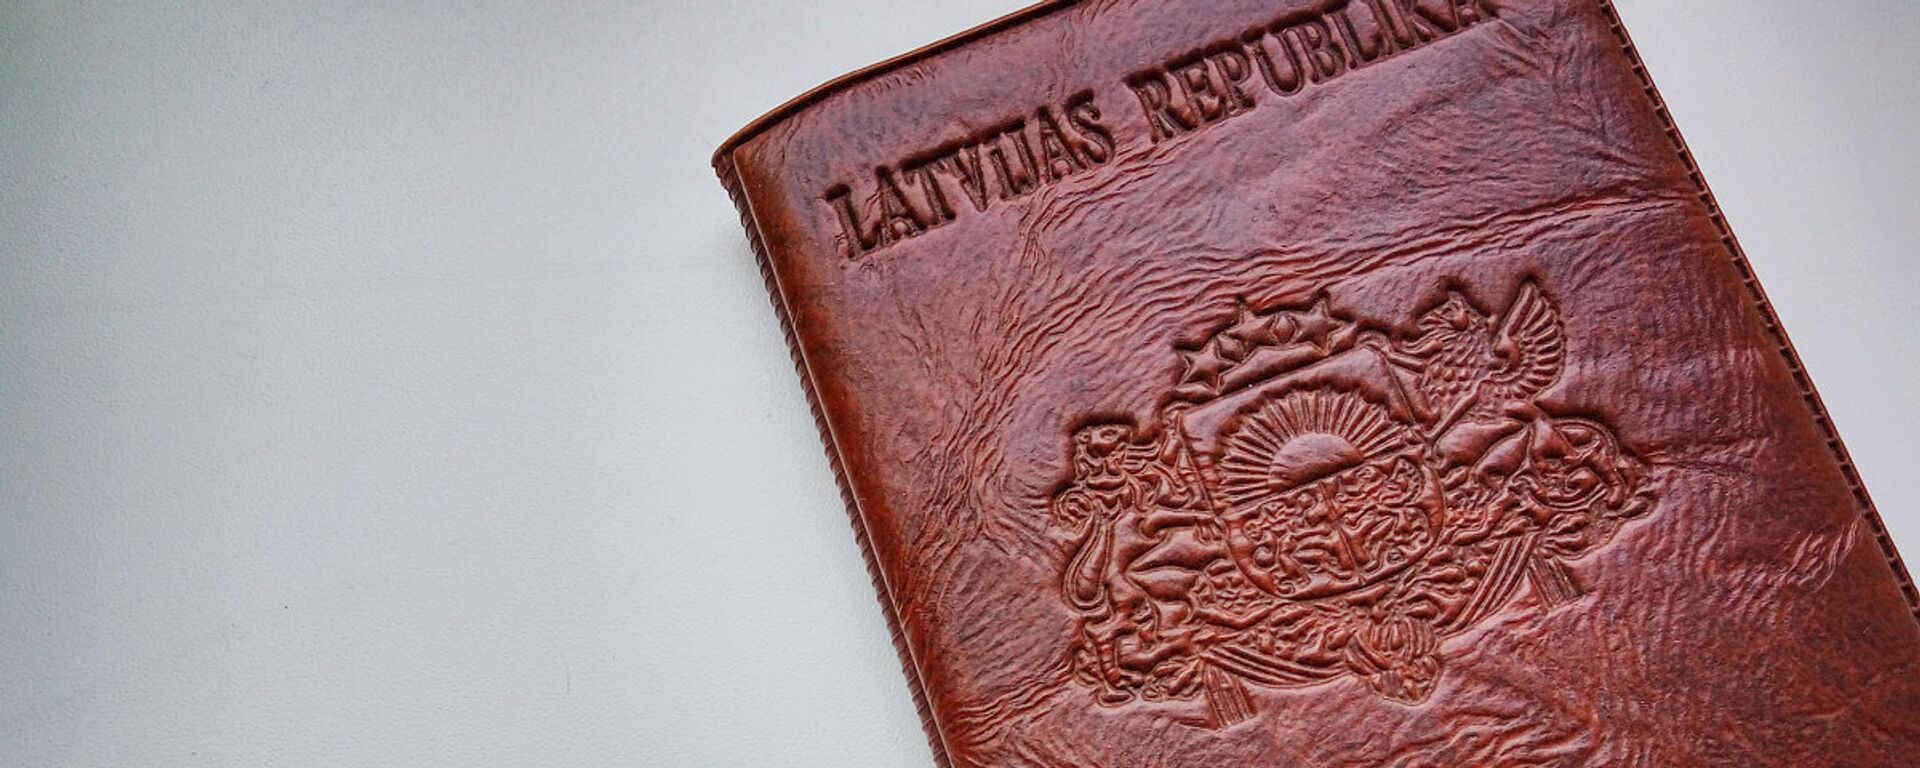 Паспорт гражданина Латвии - Sputnik Латвия, 1920, 29.04.2021